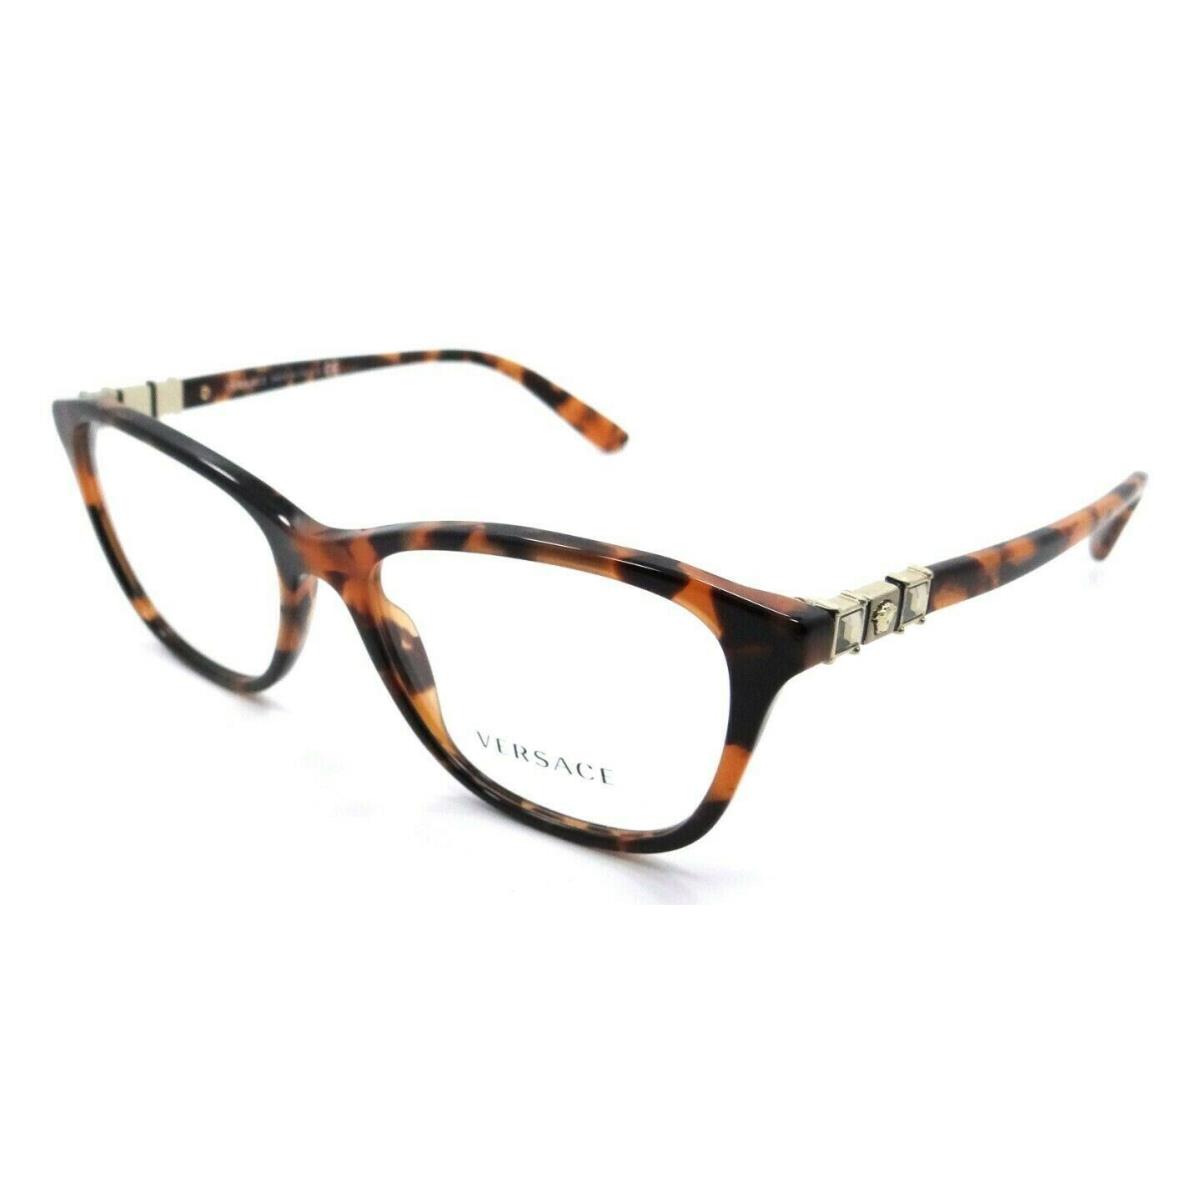 Versace Eyeglasses Frames VE 3213B 944 54-17-140 Dark Havana Made in Italy